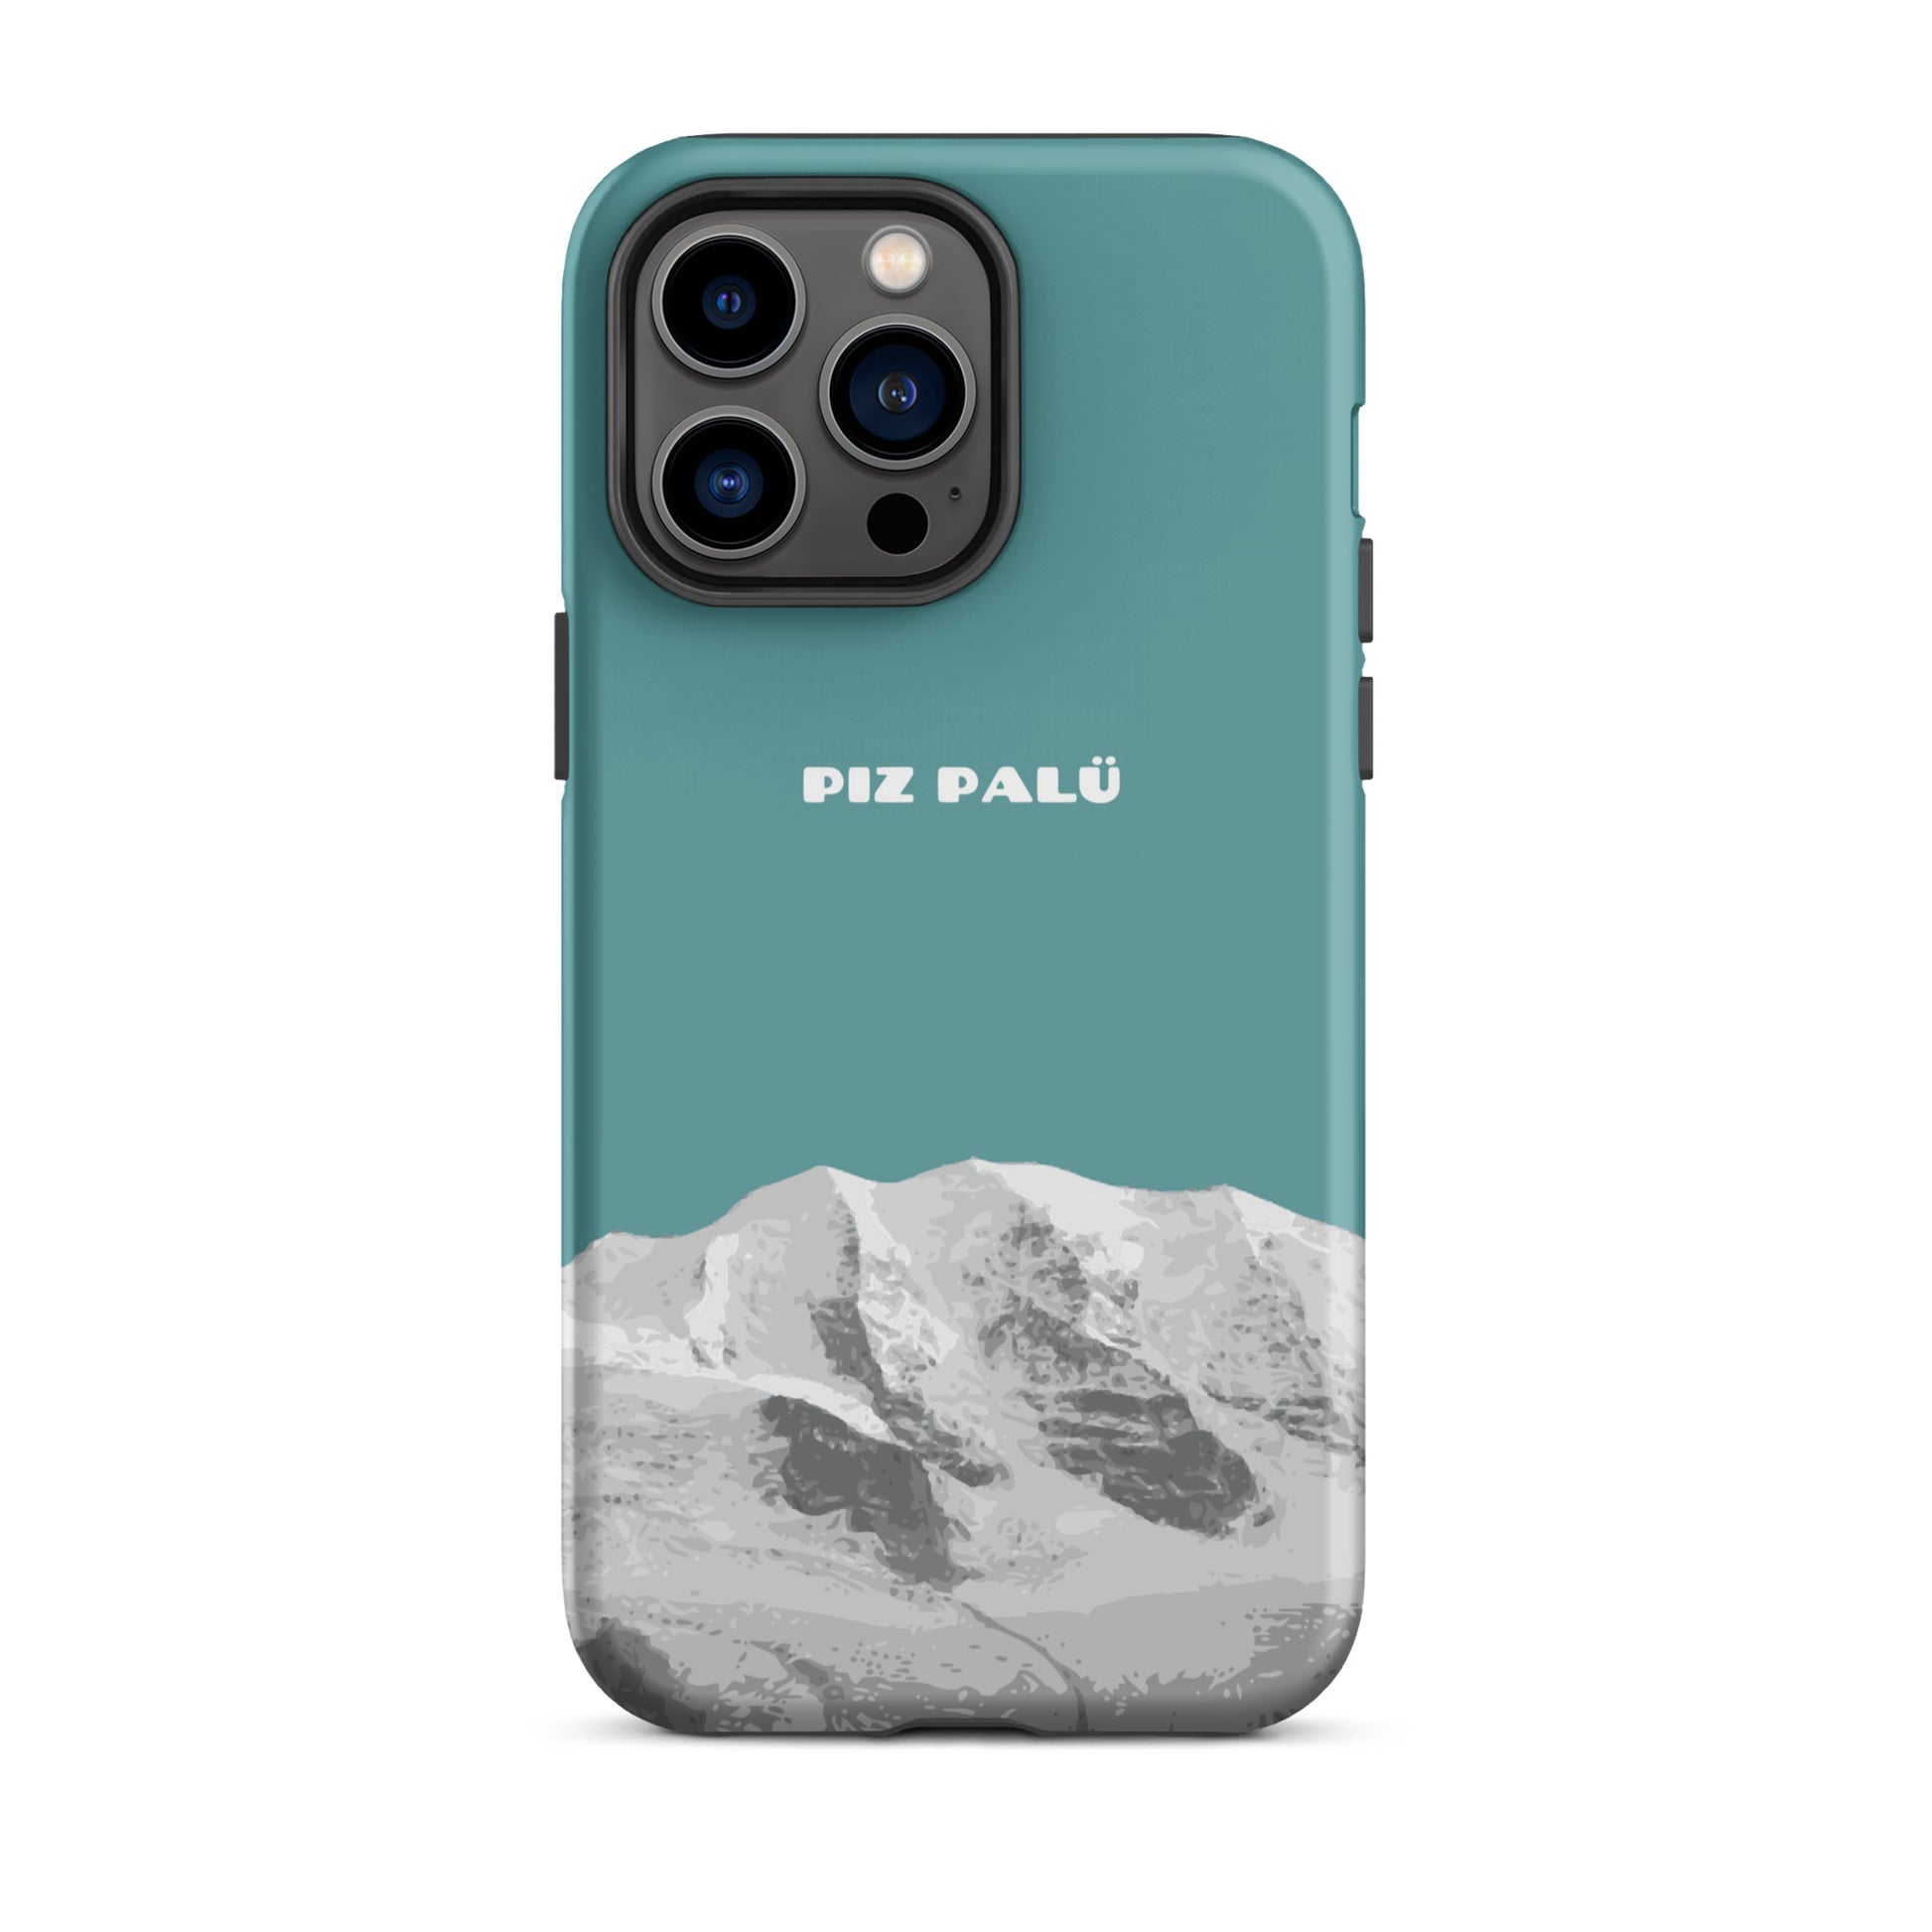 Hülle für das iPhone 14 Pro Max von Apple in der Farbe Kadettenblau, dass den Piz Palü in Graubünden zeigt.